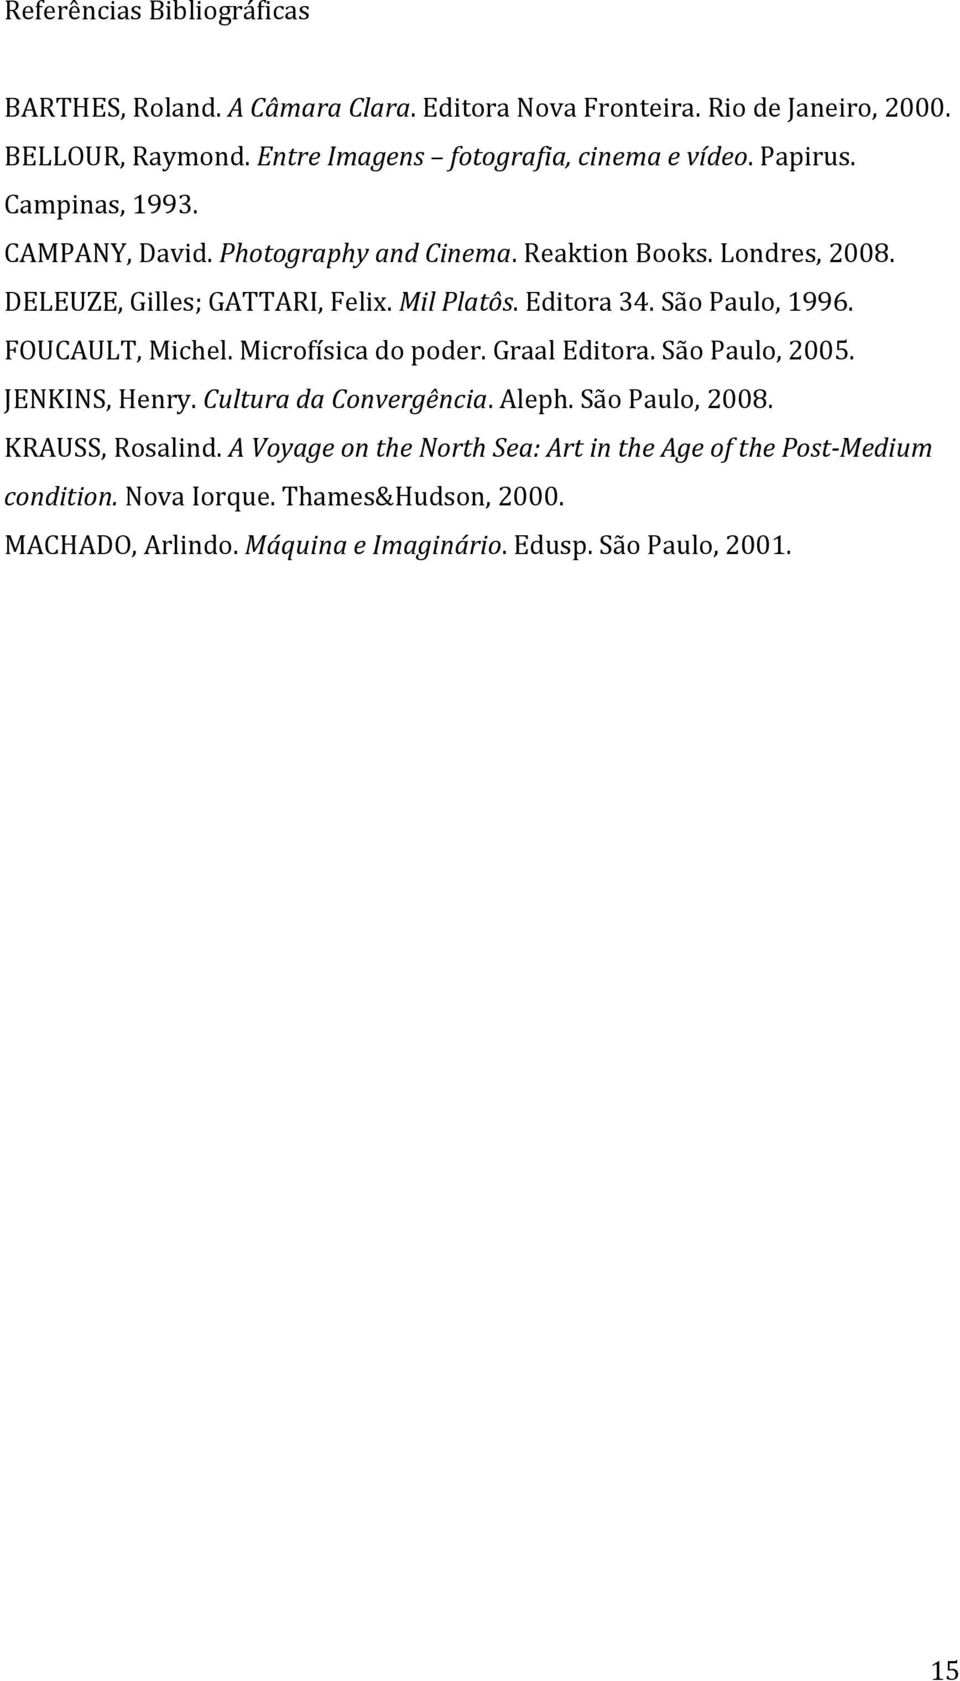 São Paulo, 1996. FOUCAULT, Michel. Microfísica do poder. Graal Editora. São Paulo, 2005. JENKINS, Henry. Cultura da Convergência. Aleph. São Paulo, 2008.